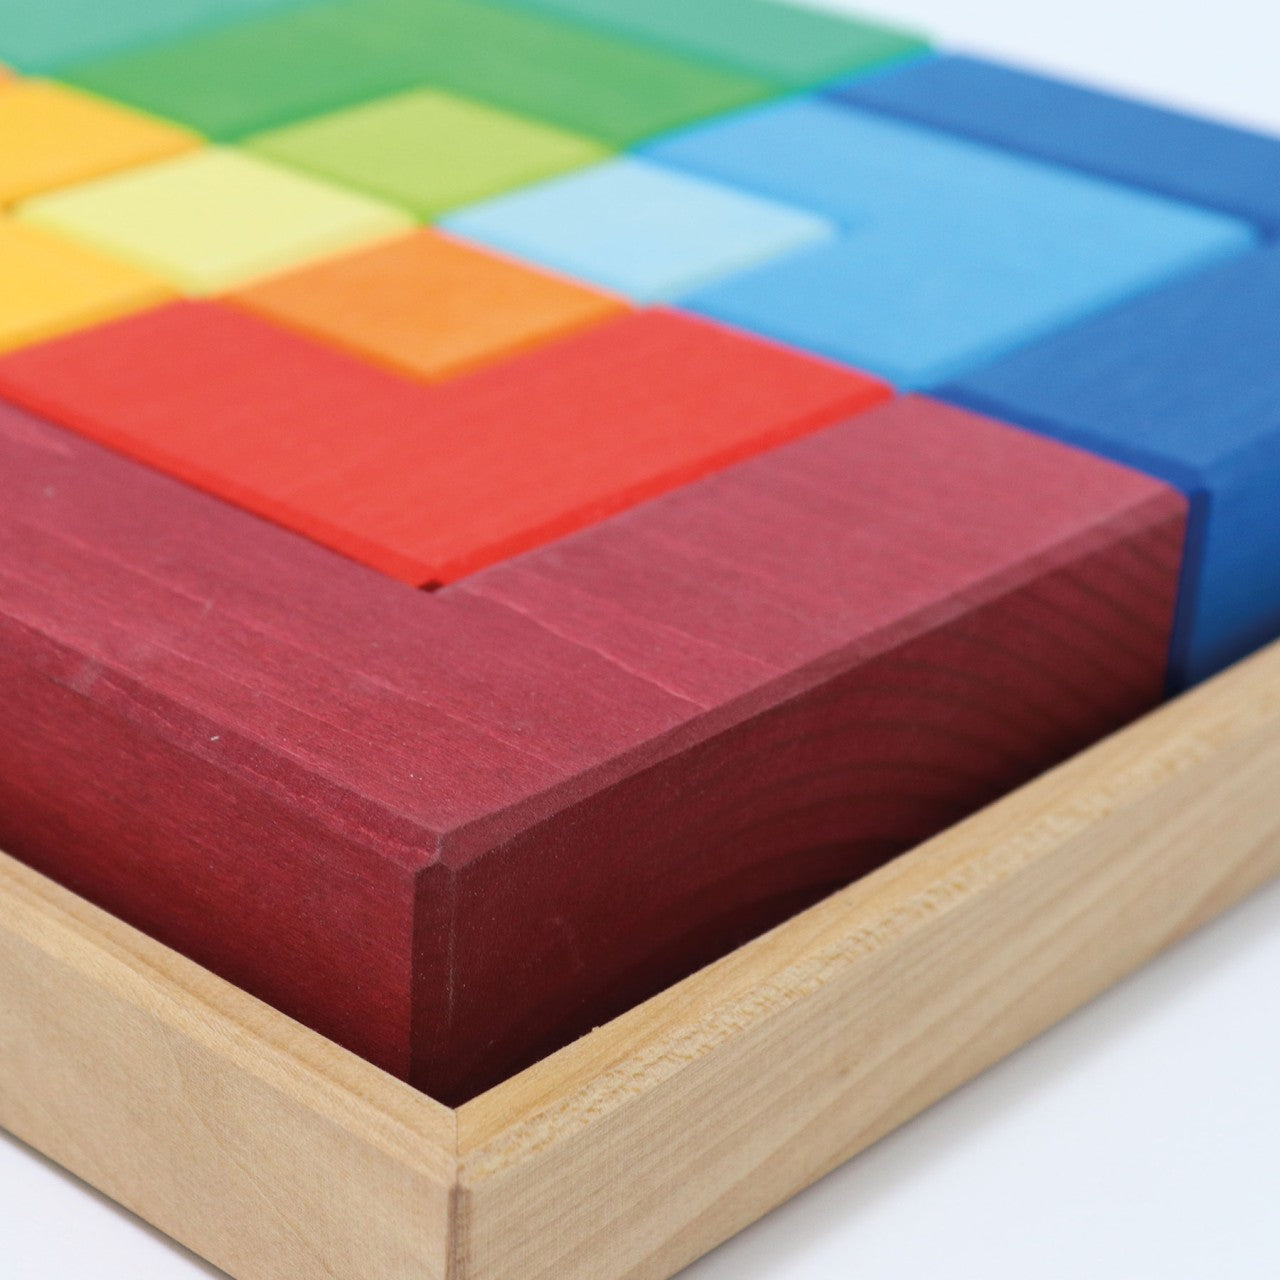 Large Square | Wooden Puzzle & Building Set